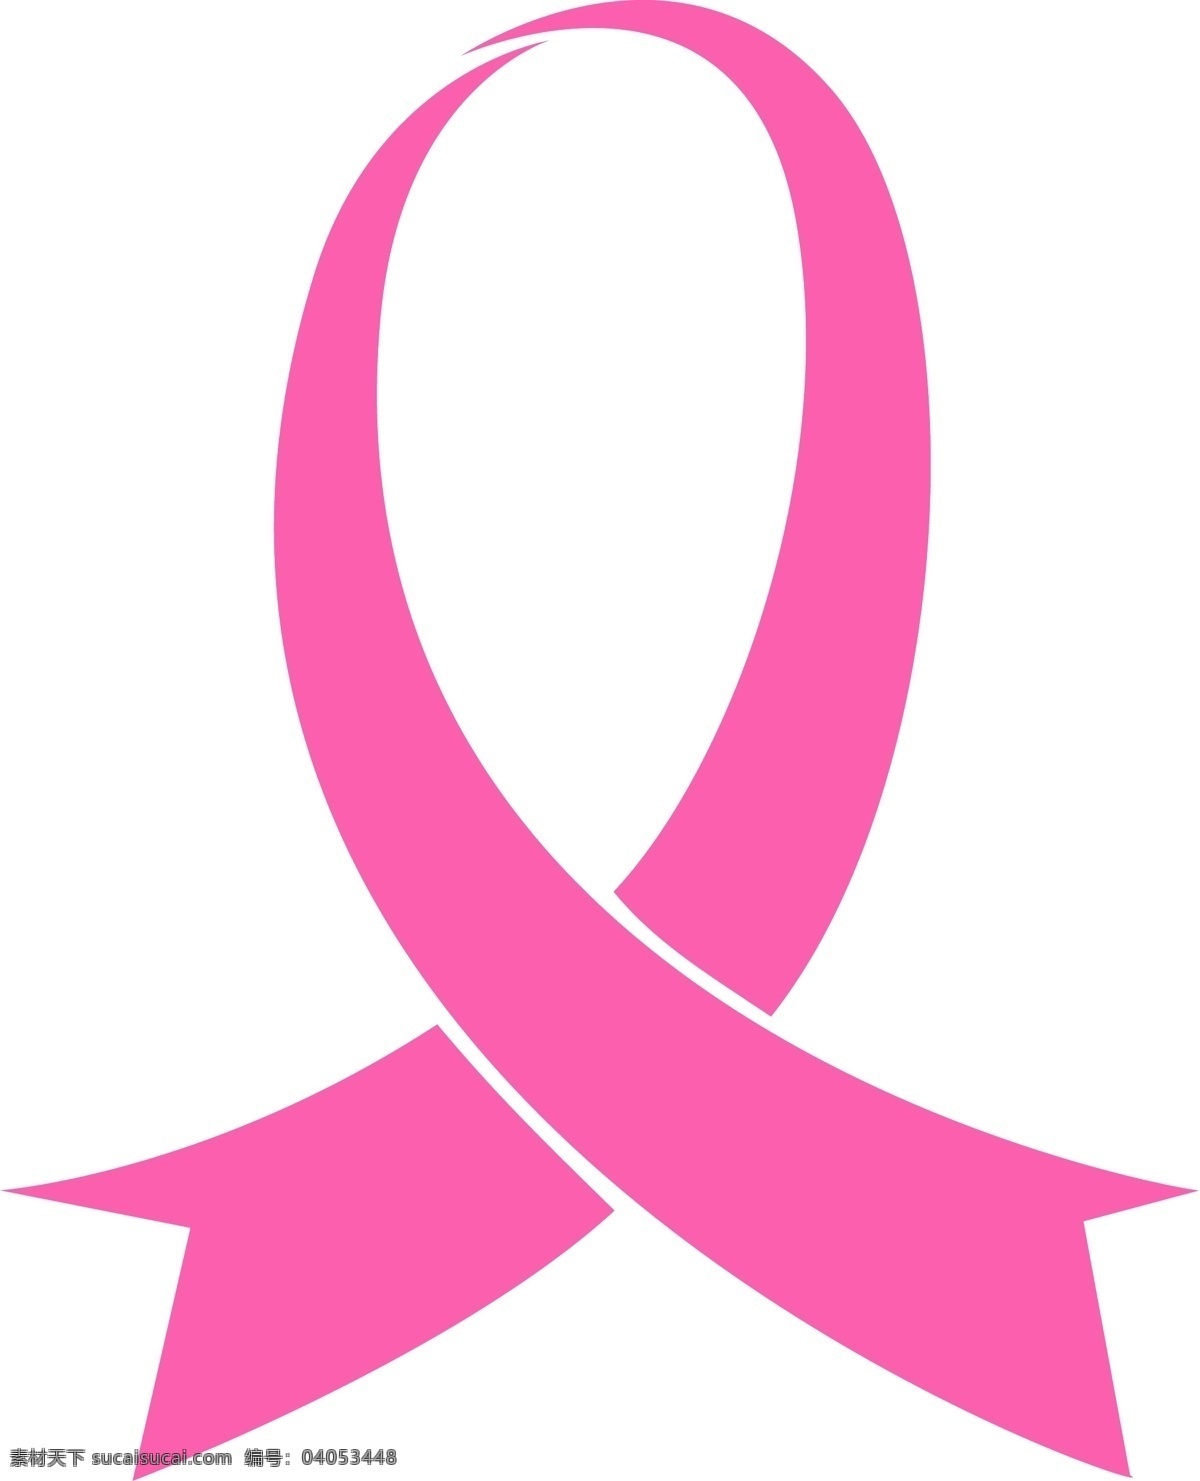 粉红丝带 防治乳腺癌 基金 logo 公共标识标志 标识标志图标 矢量